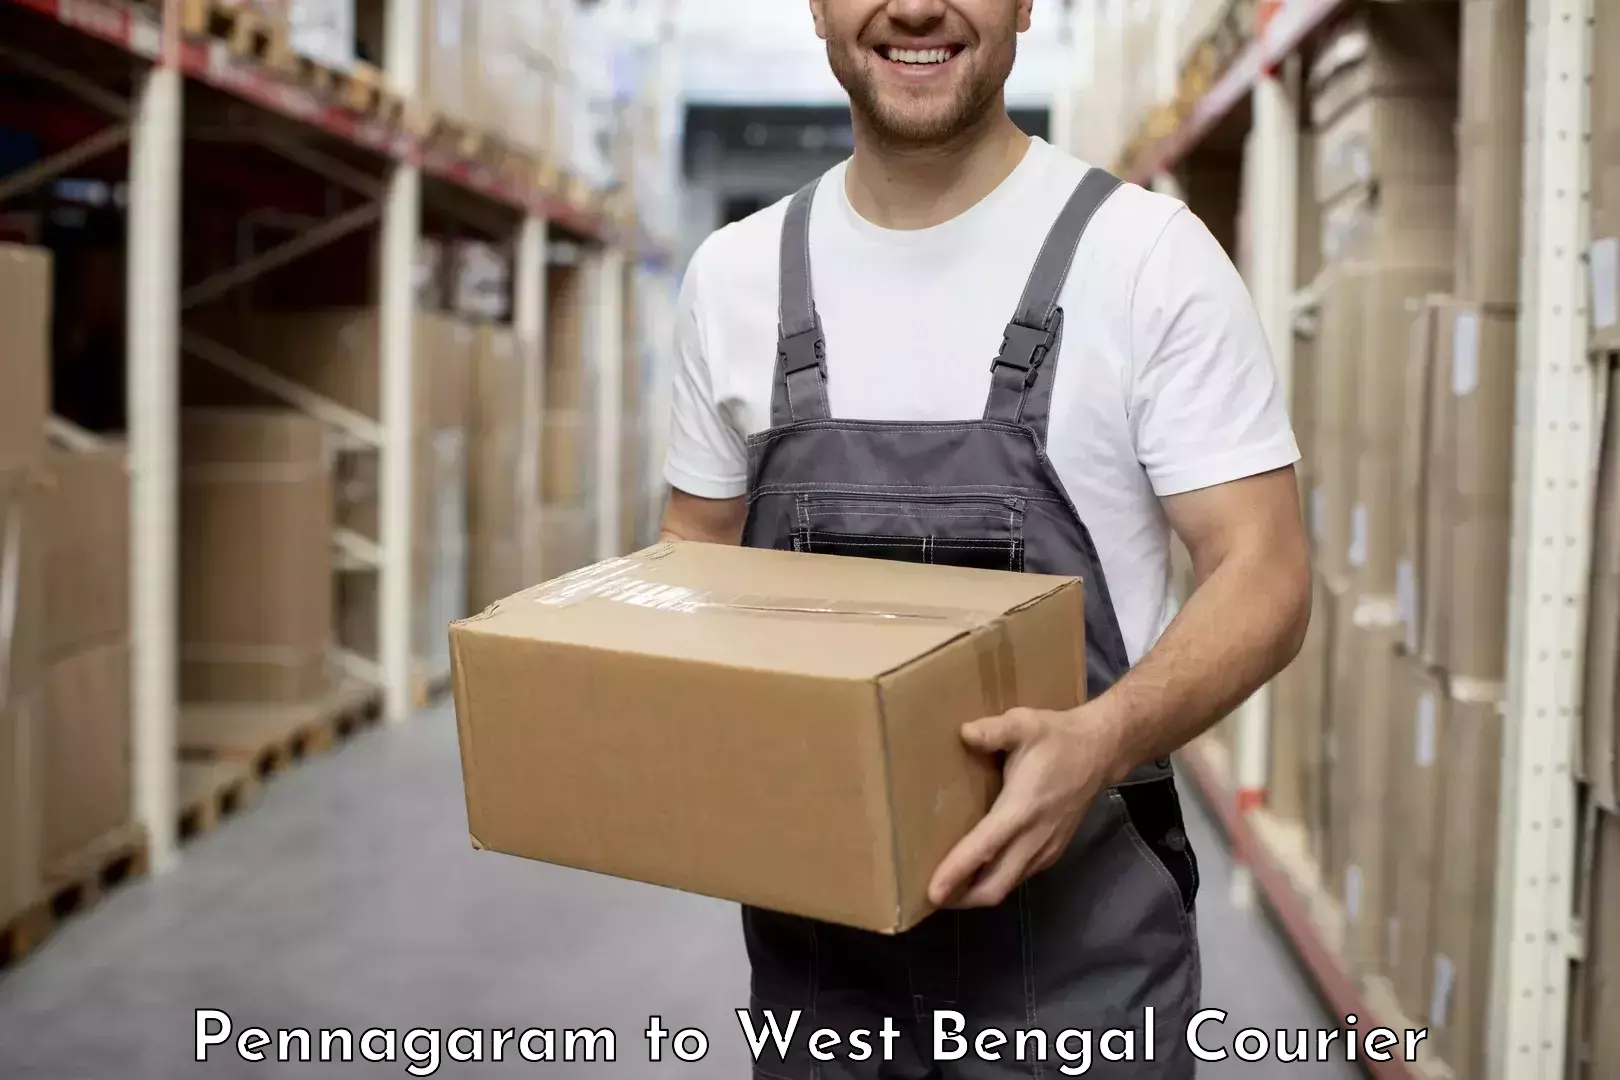 Urban courier service Pennagaram to Alipore